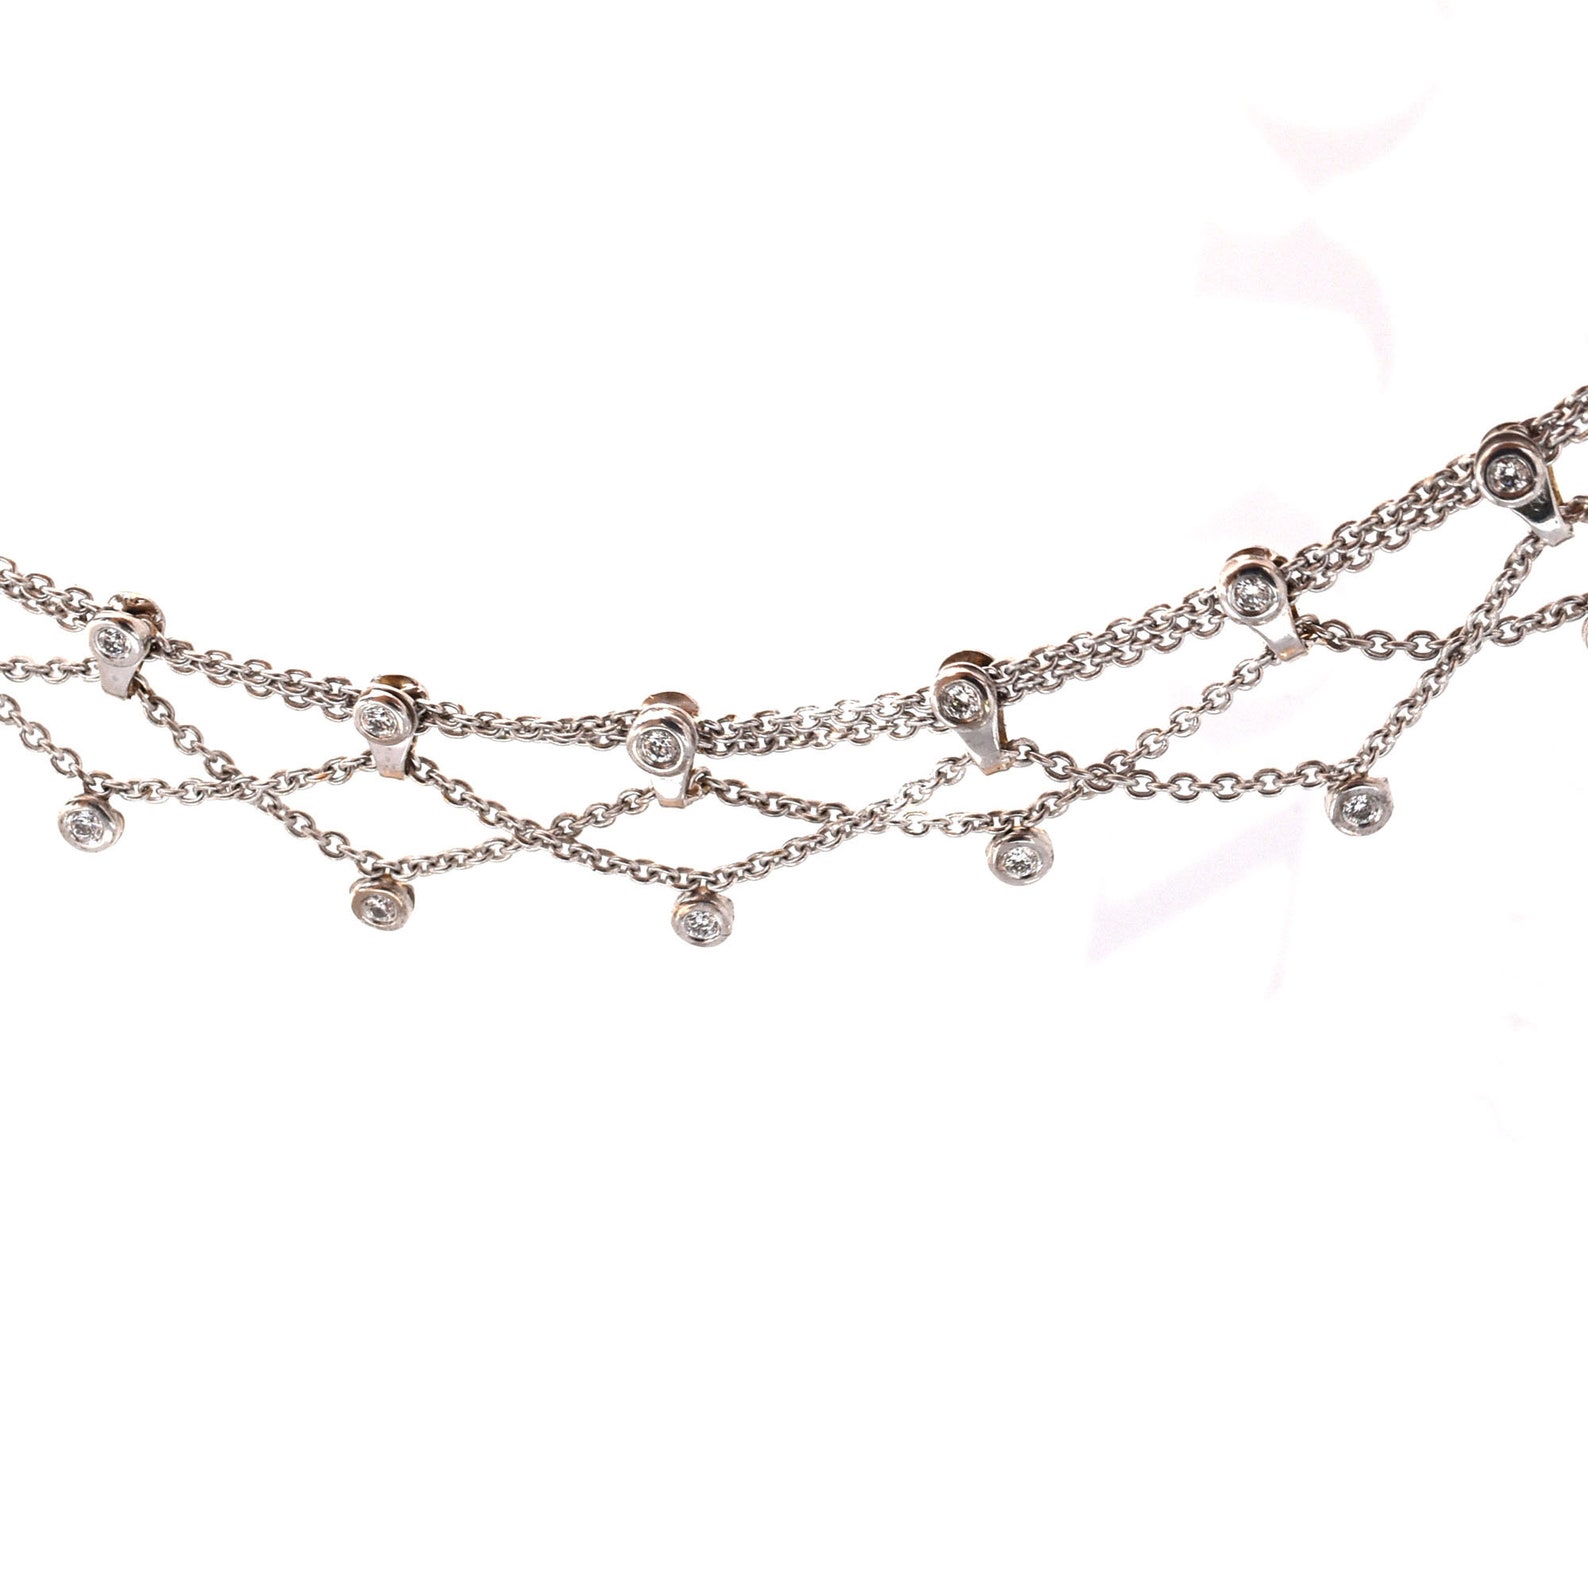 Diamond Dangle Anklet Bracelet in 18K White Gold Stunning | Etsy